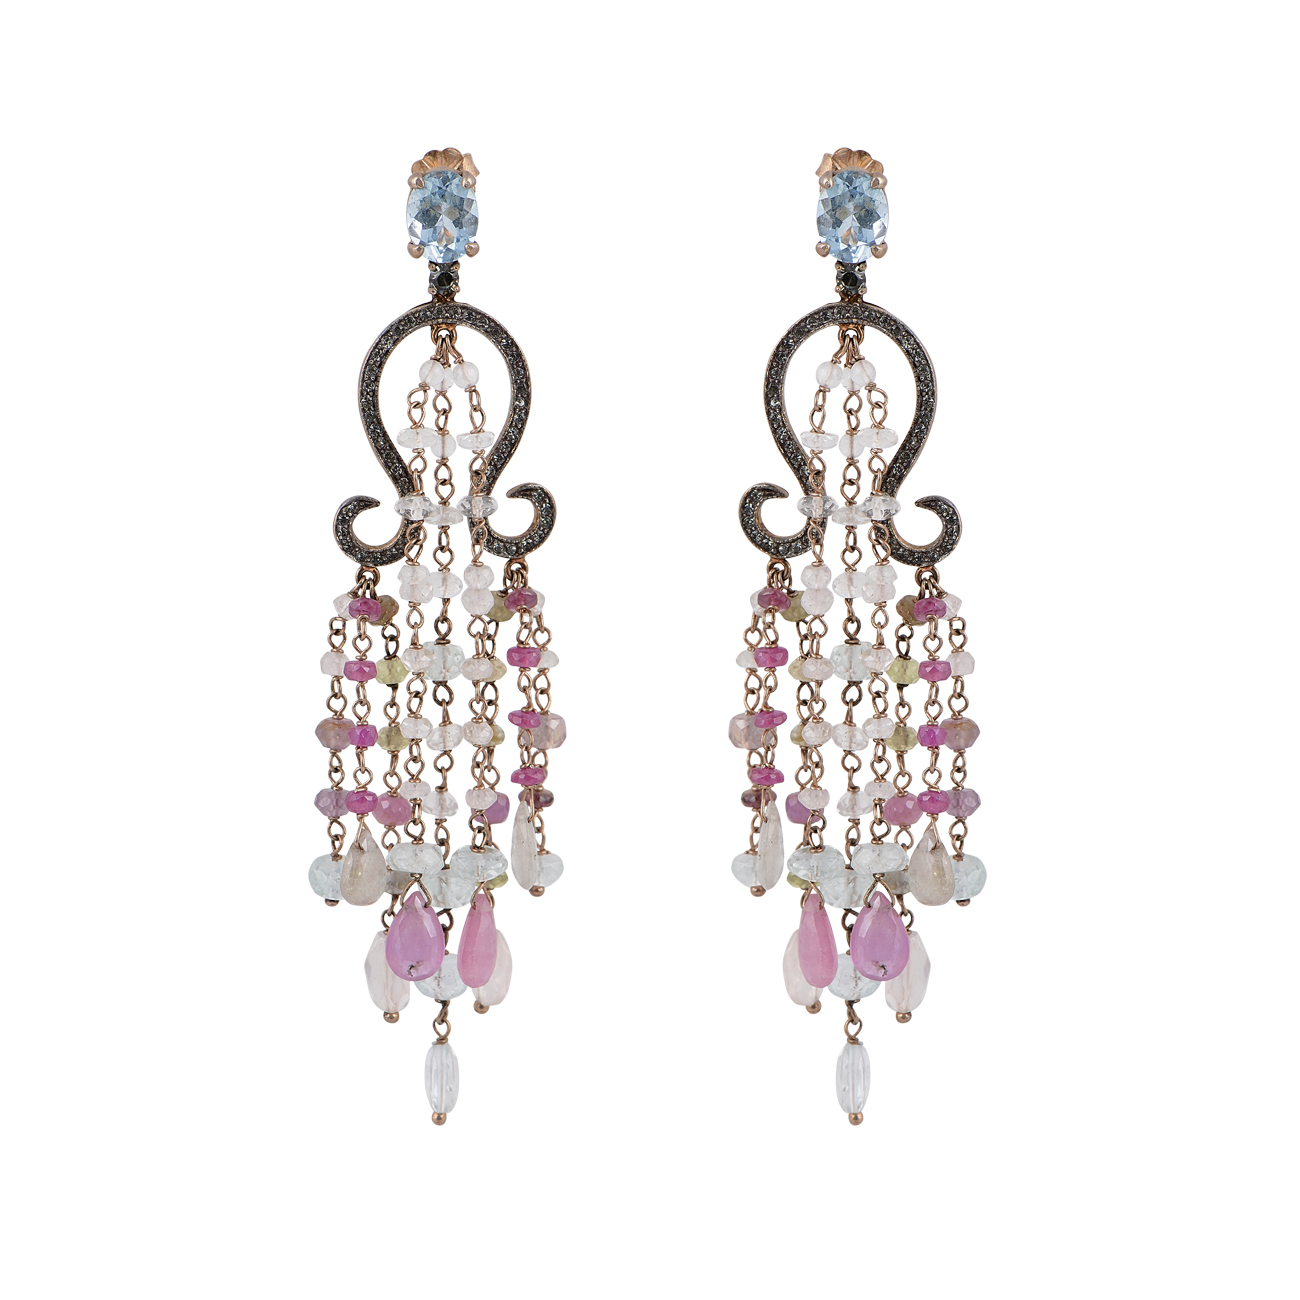 Ασημένια ροζ επίχρυσα κρεμαστά σκουλαρίκια τύπου chandelier